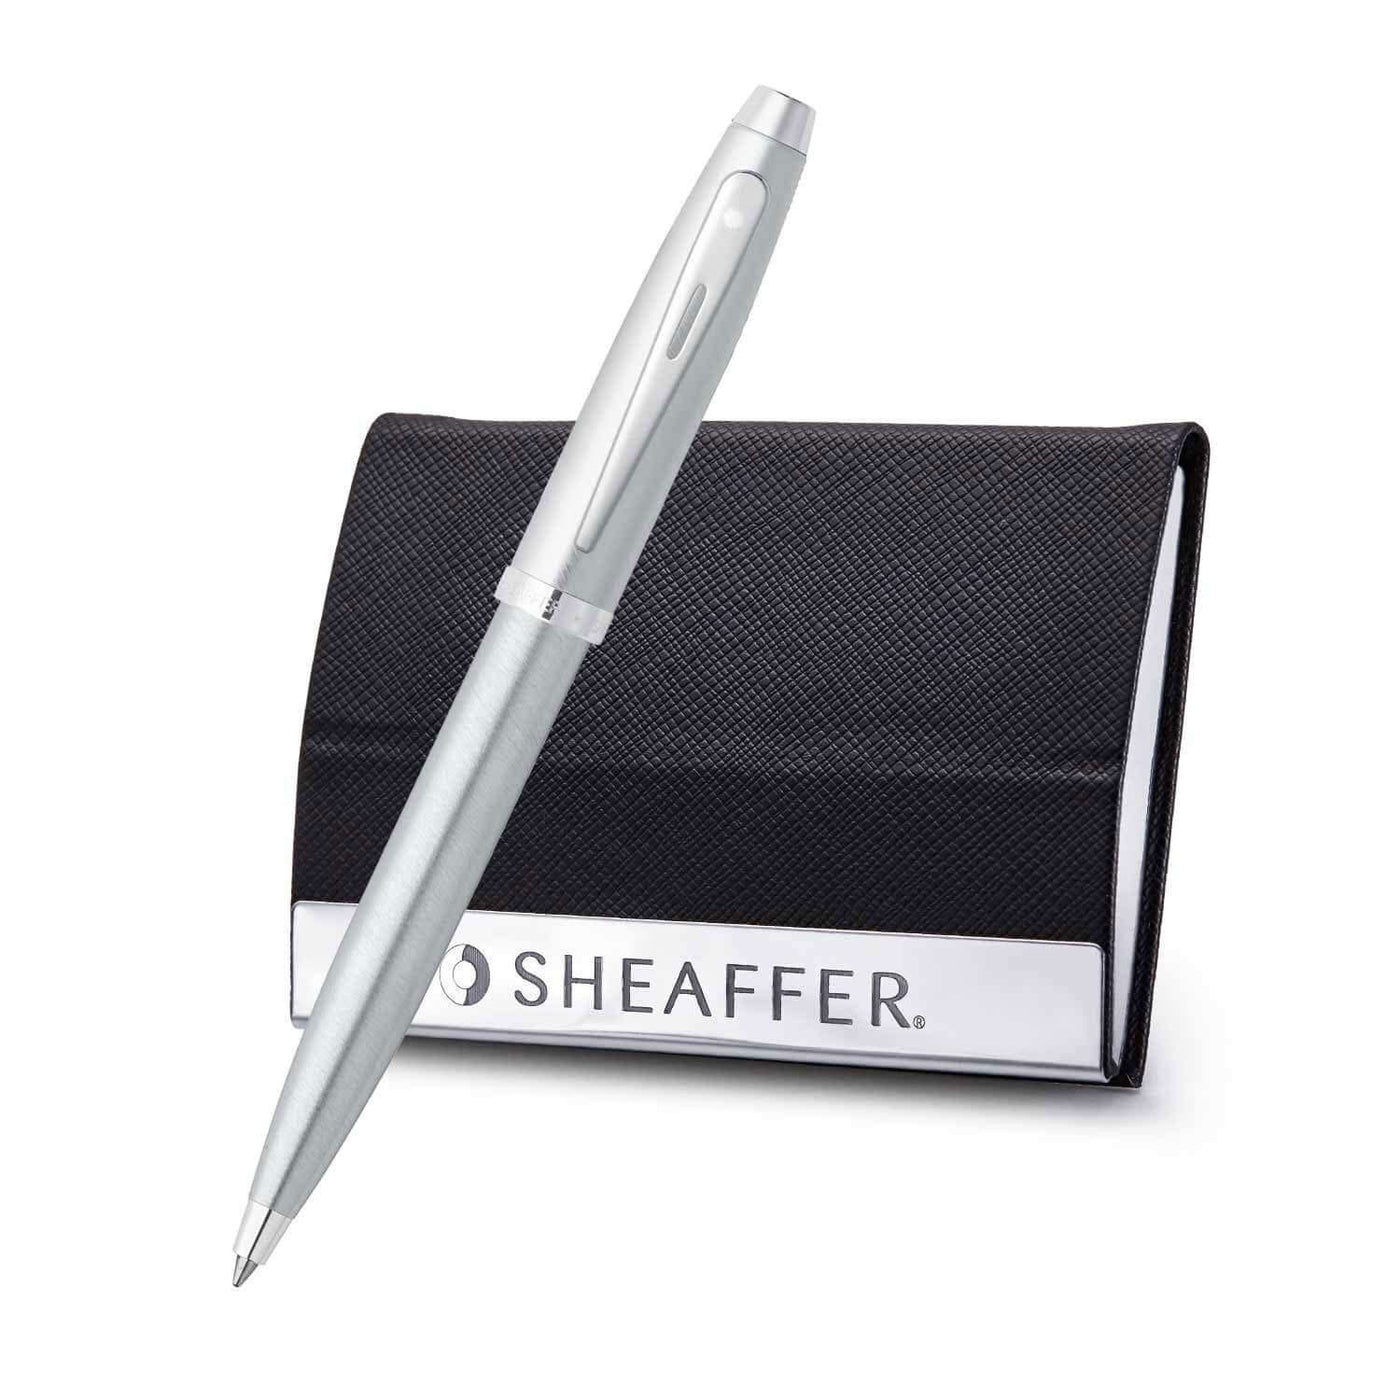 Sheaffer 100 Series Ball Pen Combo Gift Sets, Chrome + Business Card Holder 1